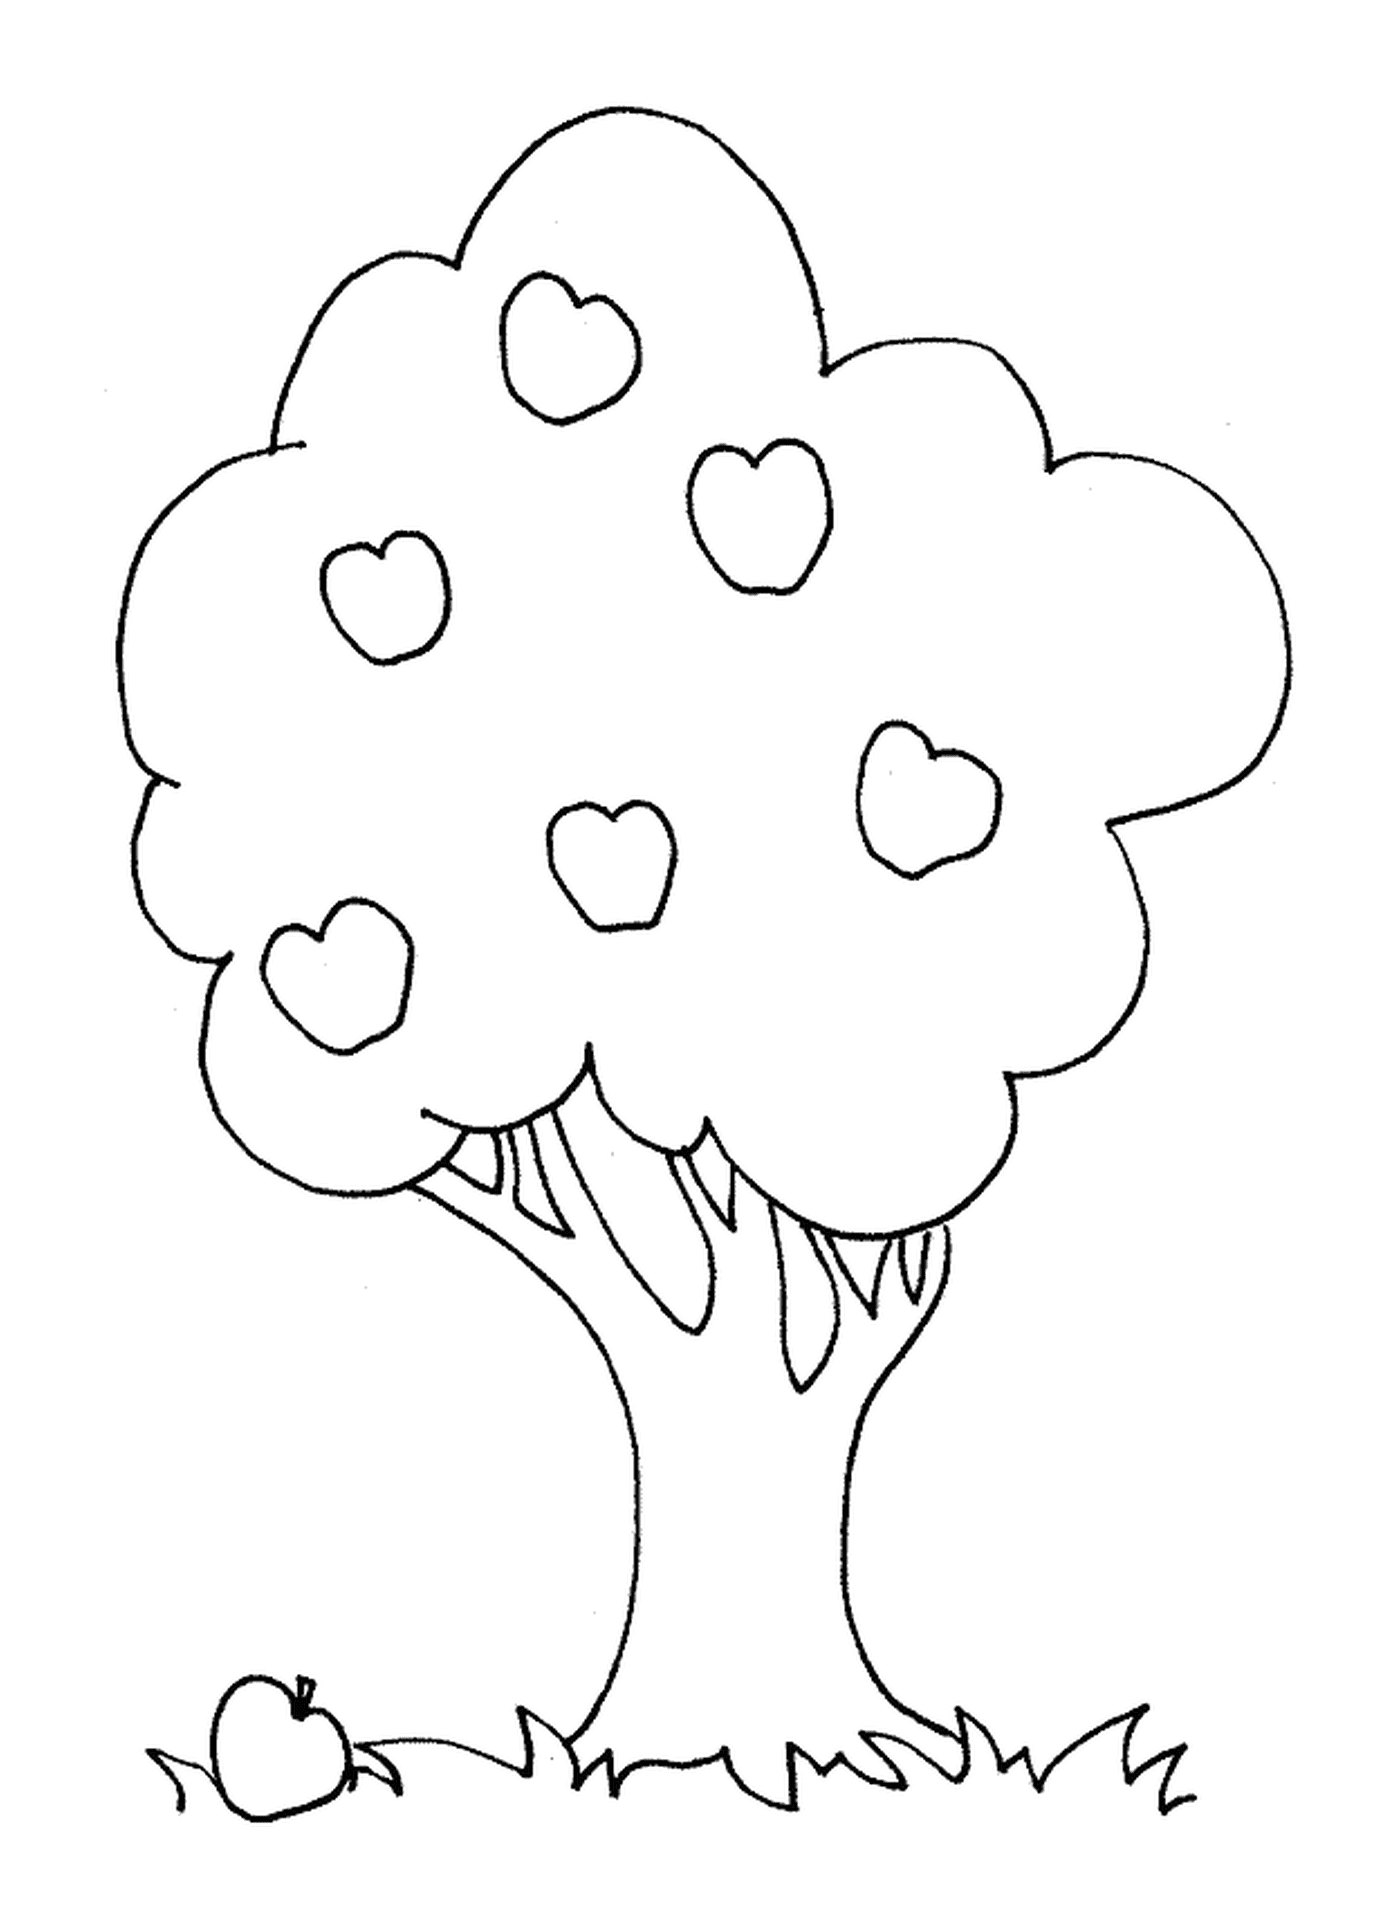  Ein Baum mit Herzen 